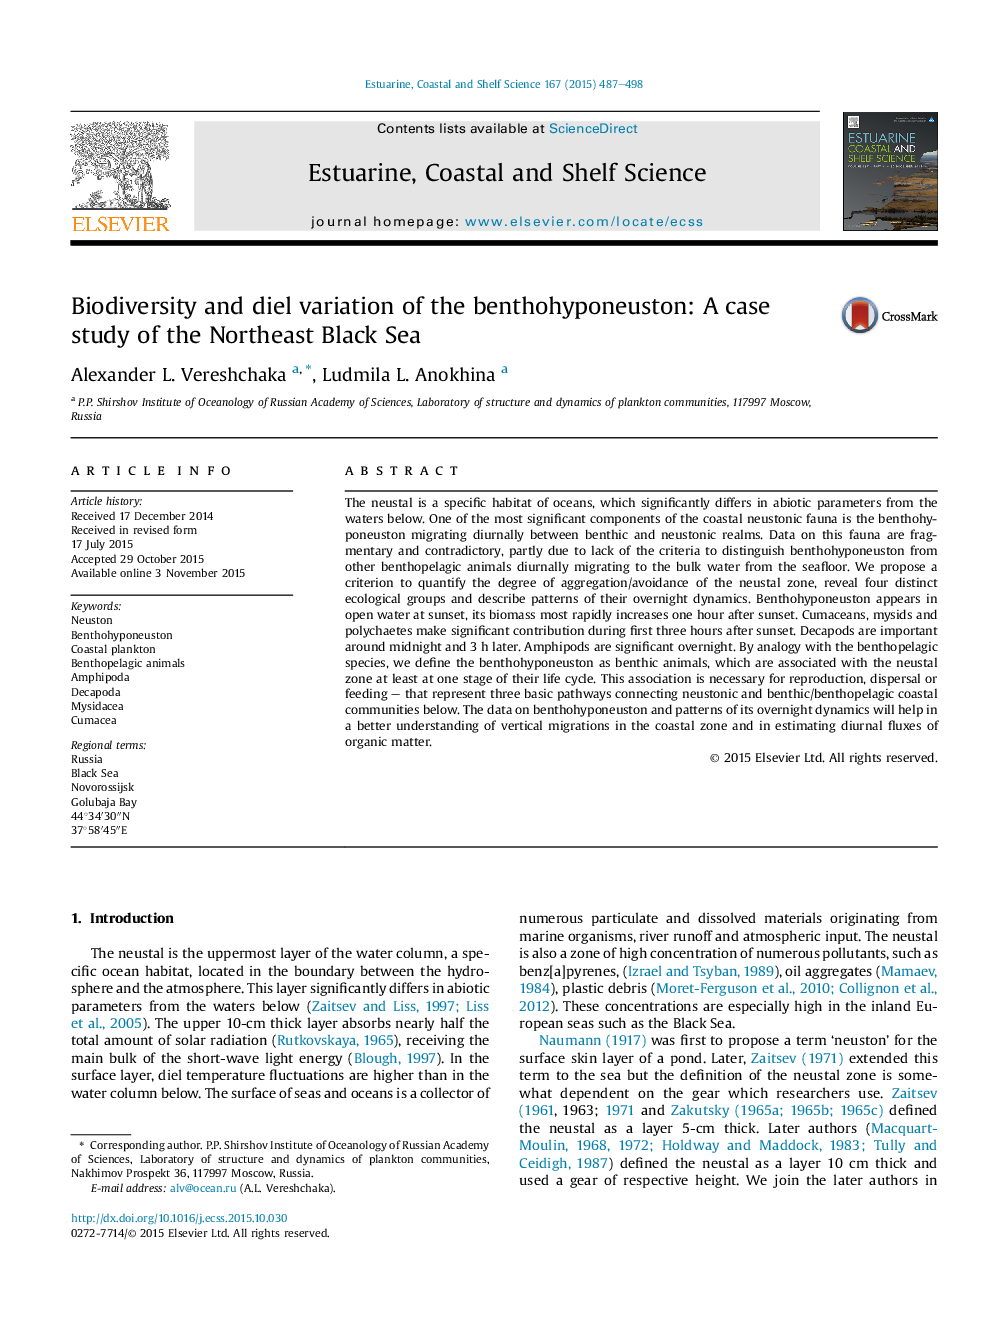 تنوع زیستی و تنوع دیل بنی هاپیونستون: مطالعه موردی دریای شمال شرقی 